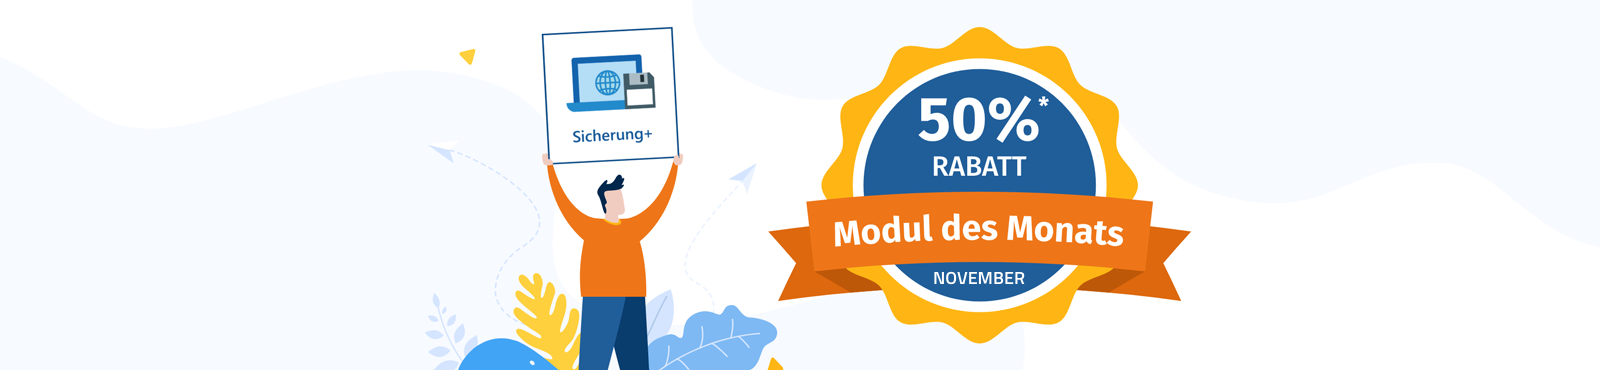 Rabattaktion November: 50% Rabatt auf das Modul Sicherung+